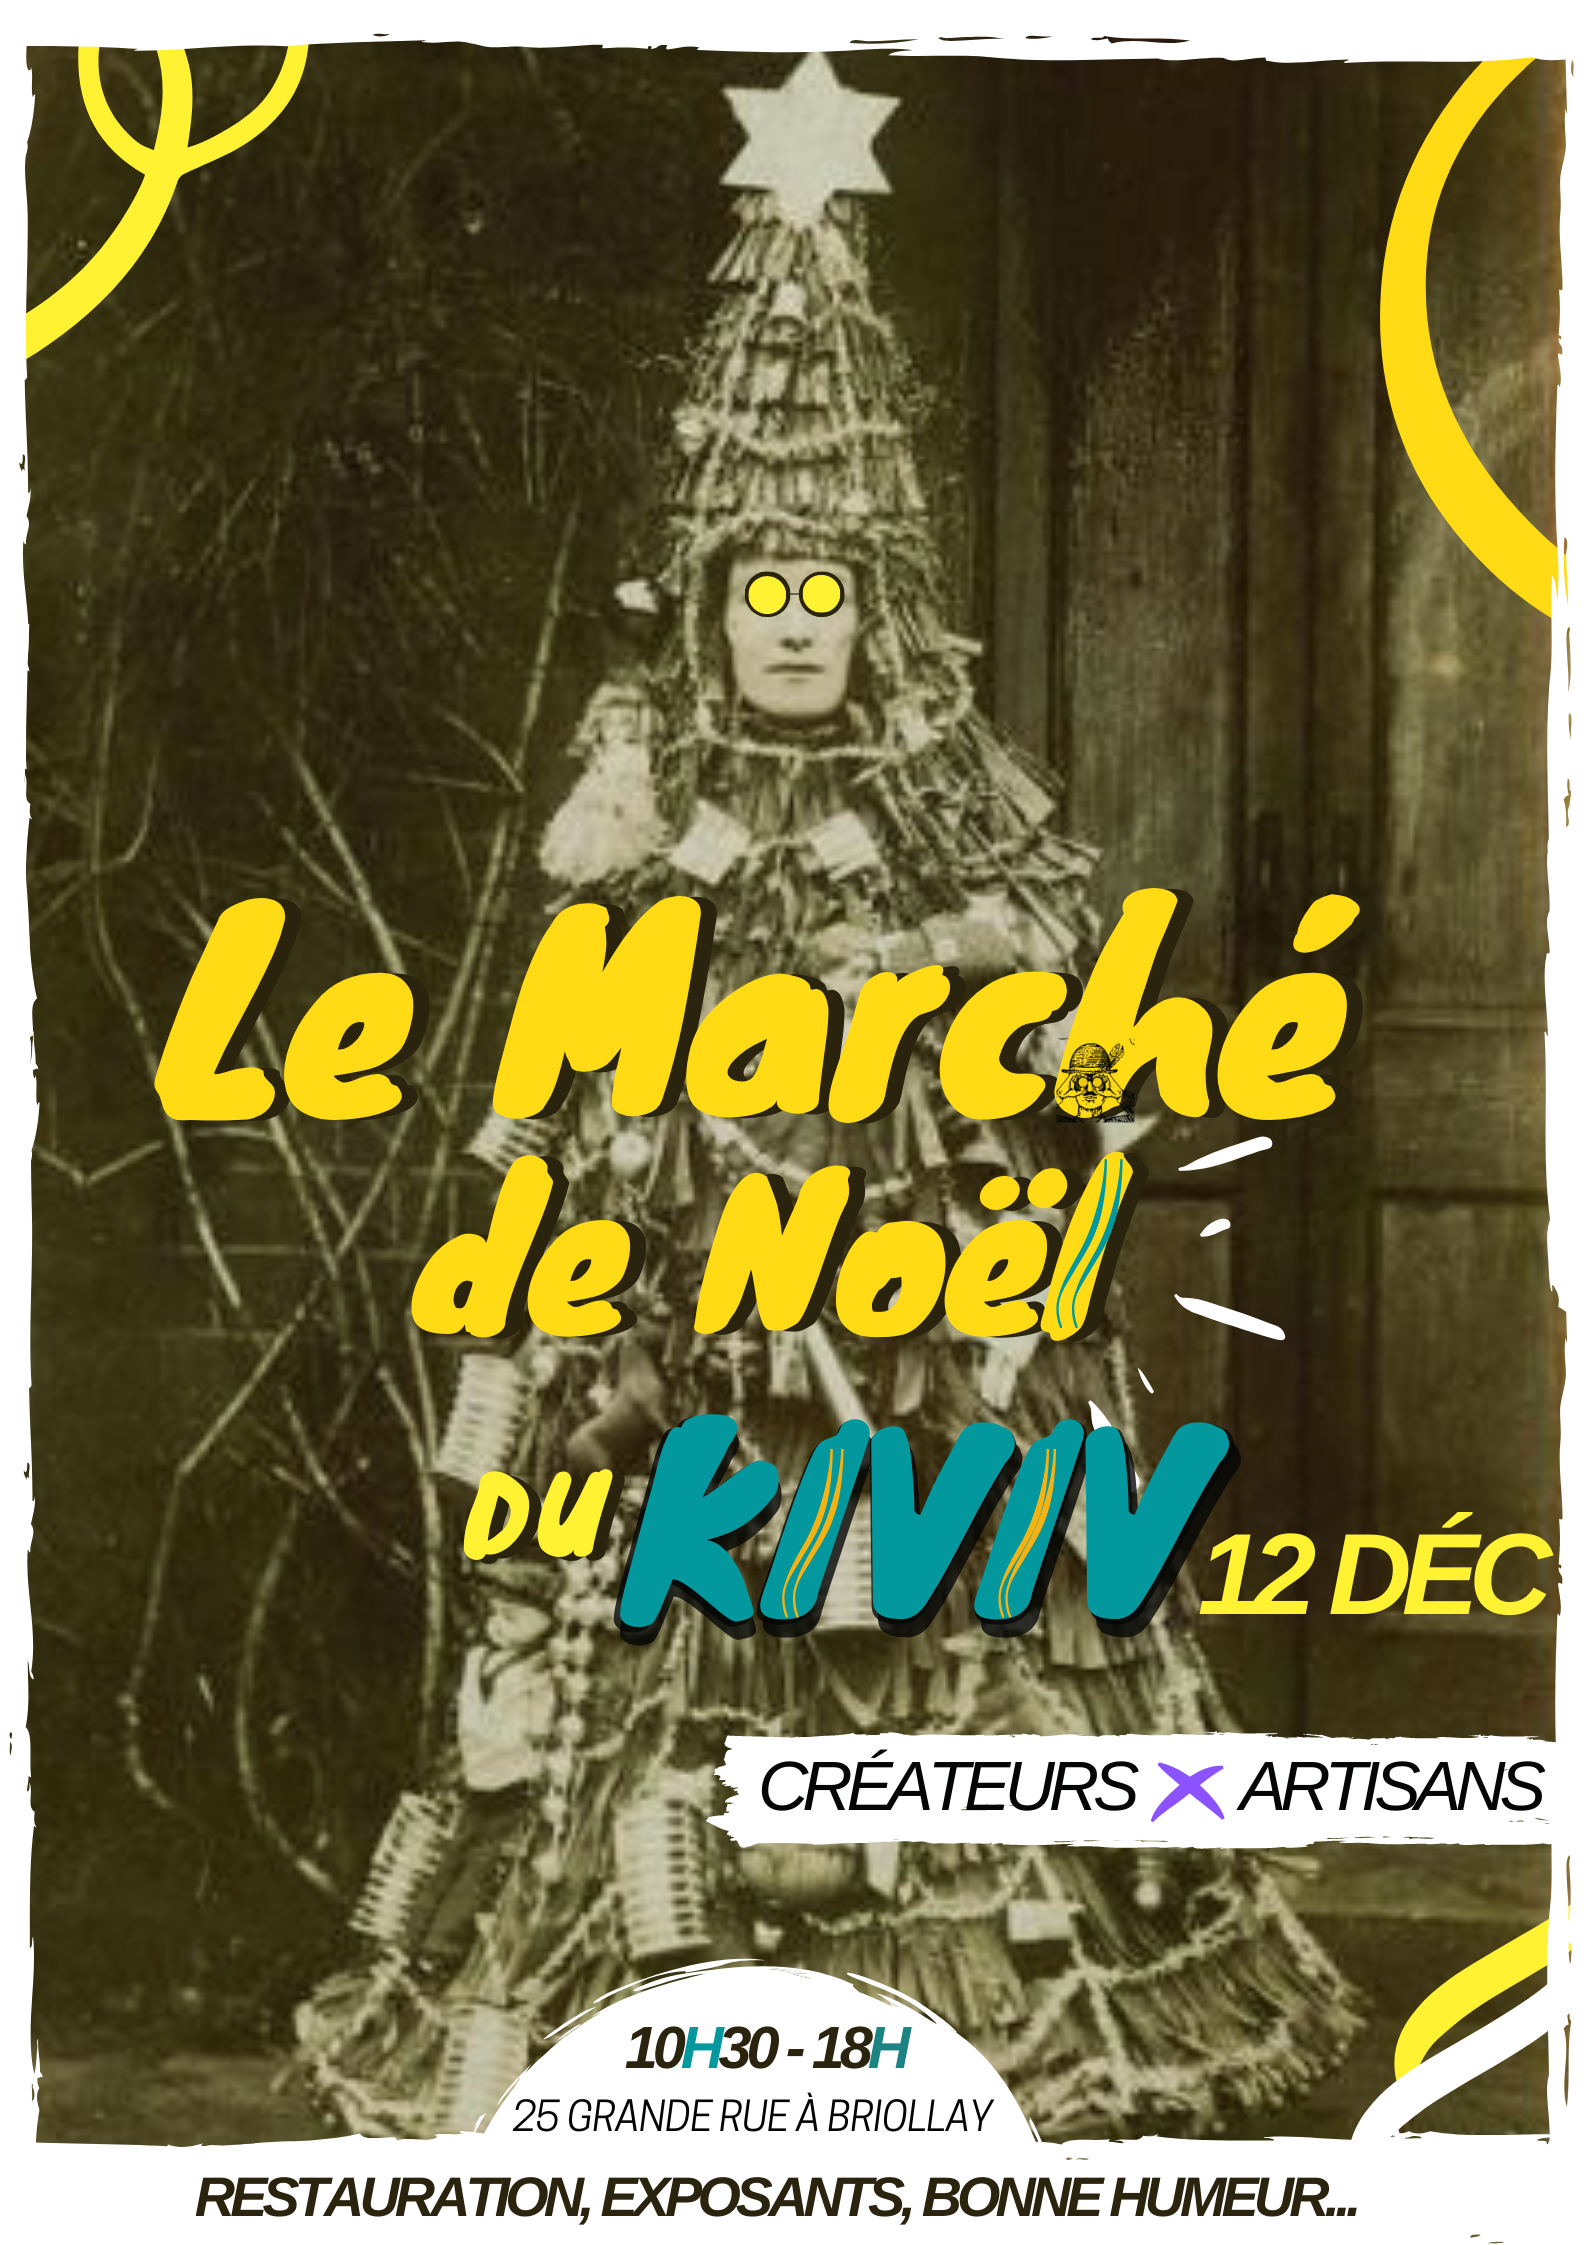 Marché de noel briollay 12 décembre createur et artisans